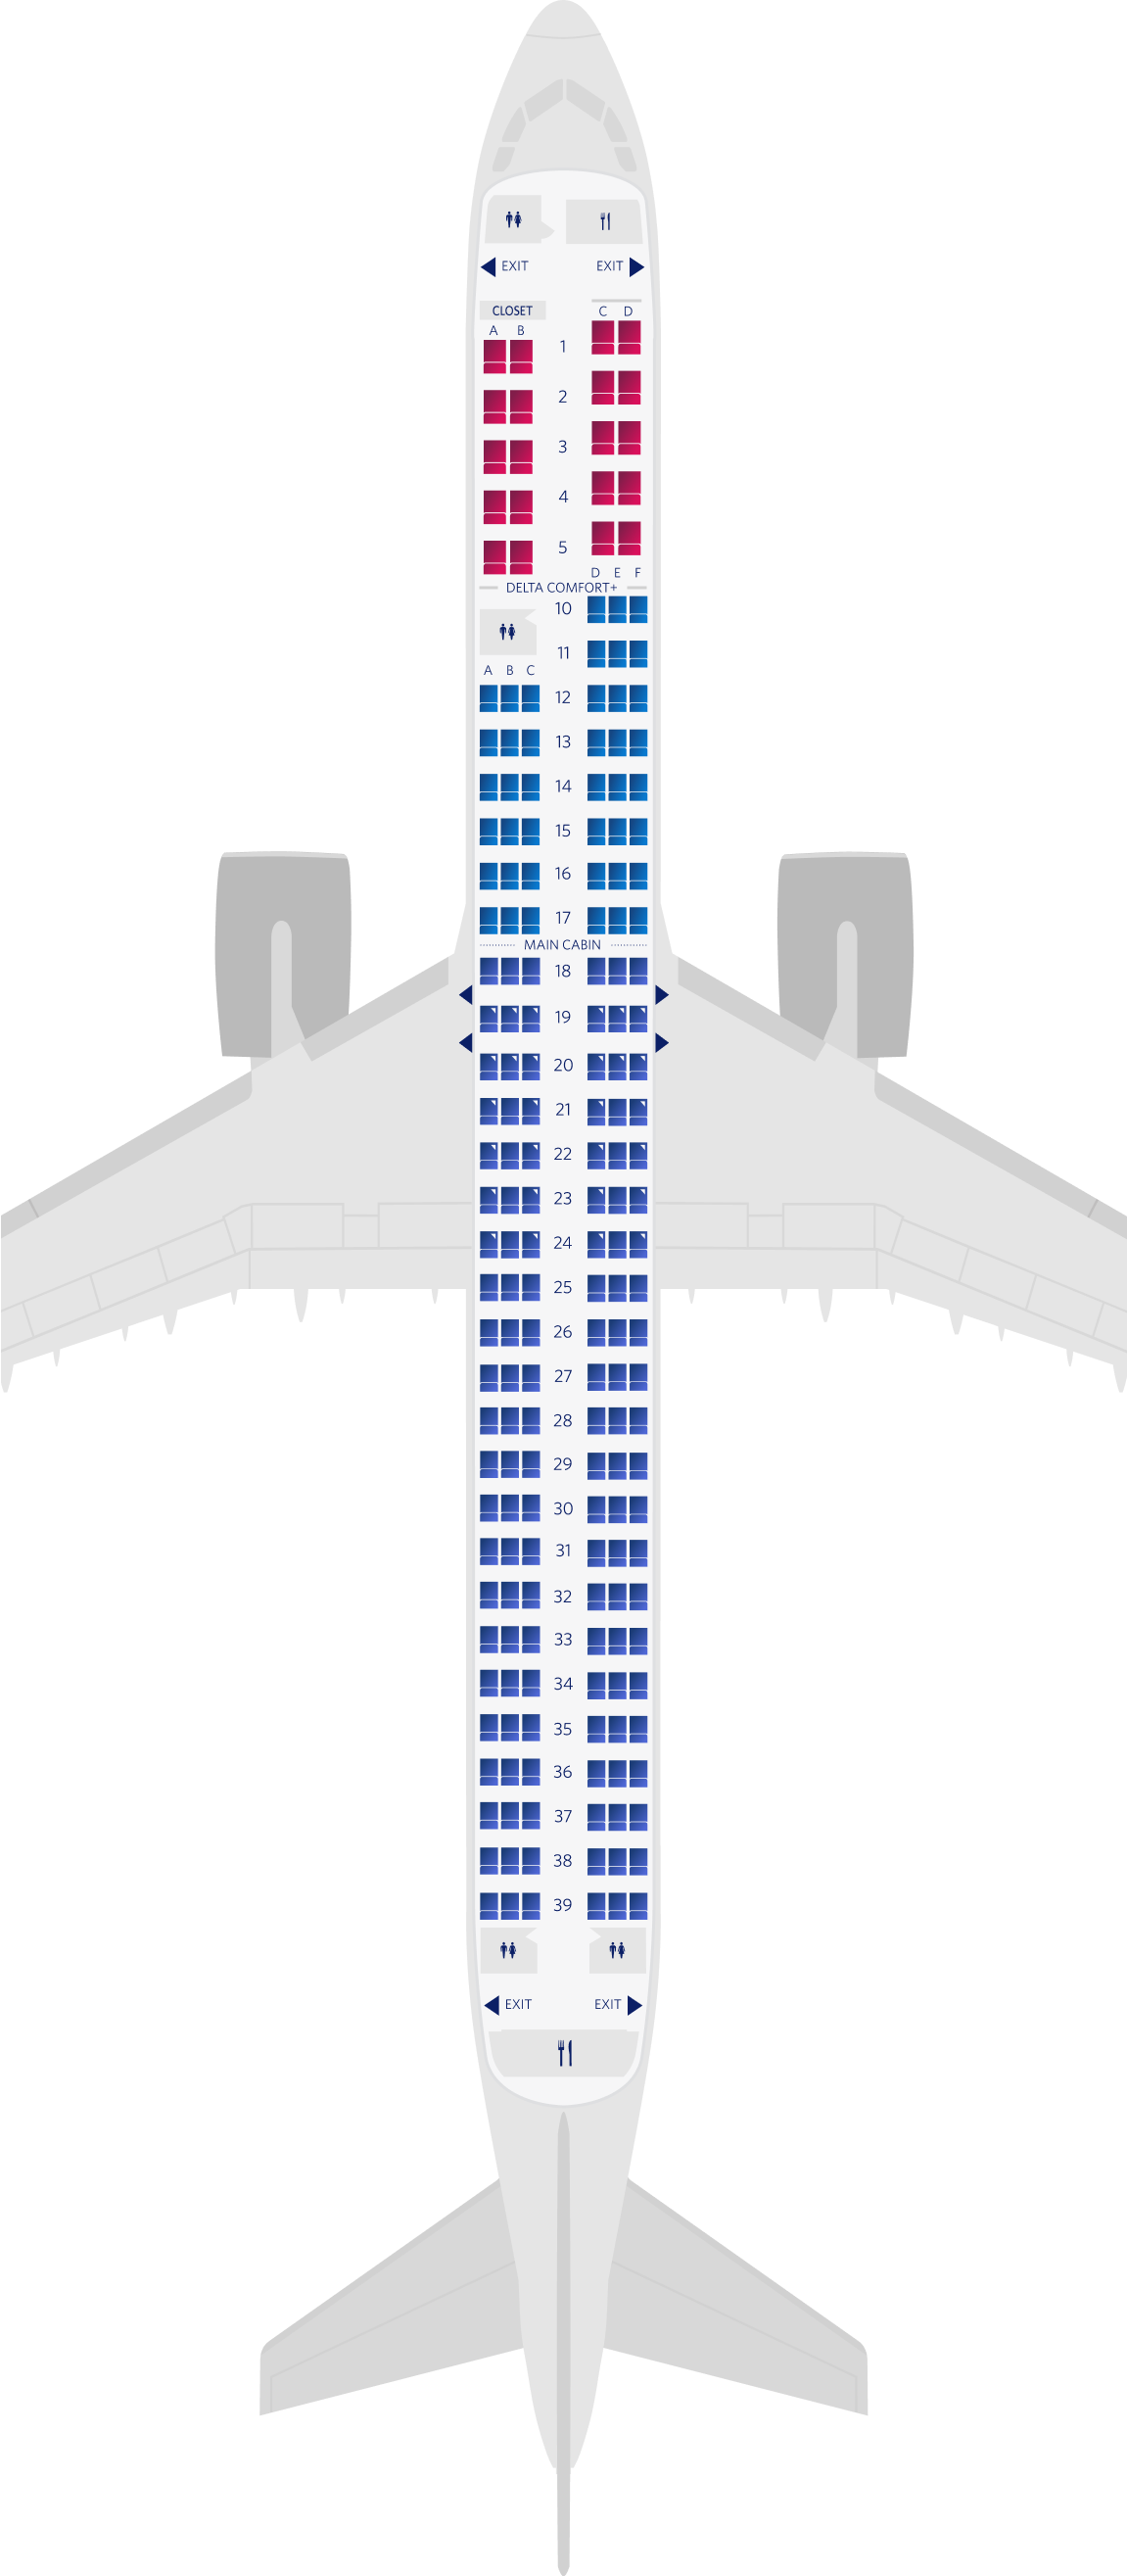 Mapa de assentos do Airbus A321neo com 3 cabines